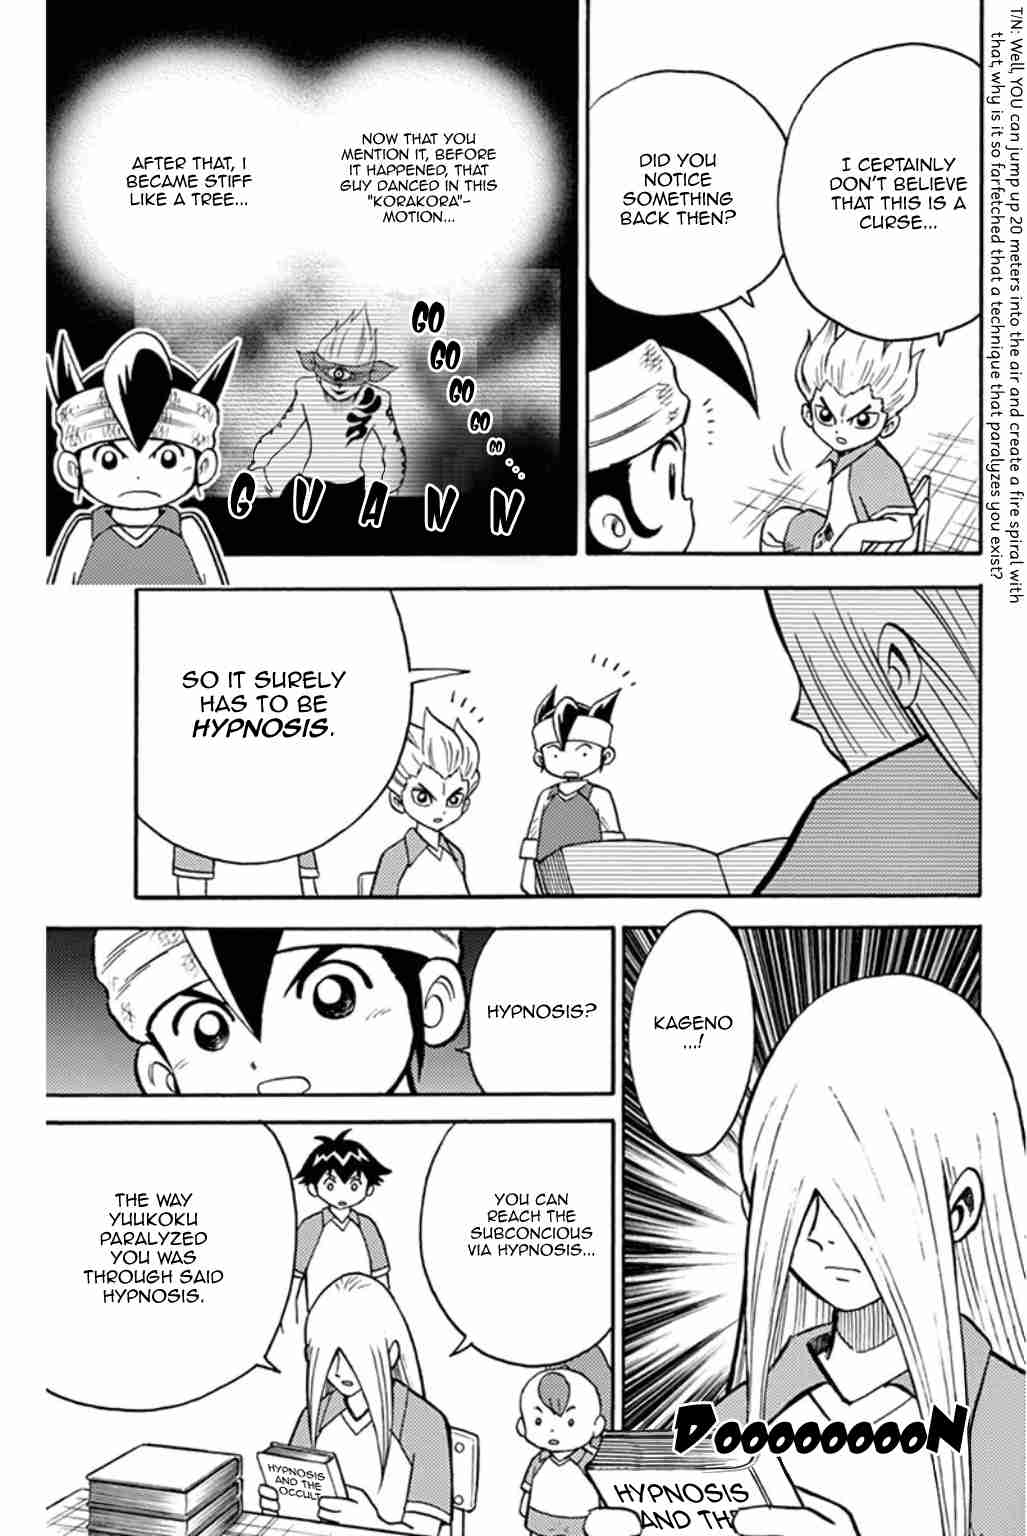 Inazuma Eleven Vol. 2 Ch. 5 Break the Spell, Raimon Junior High